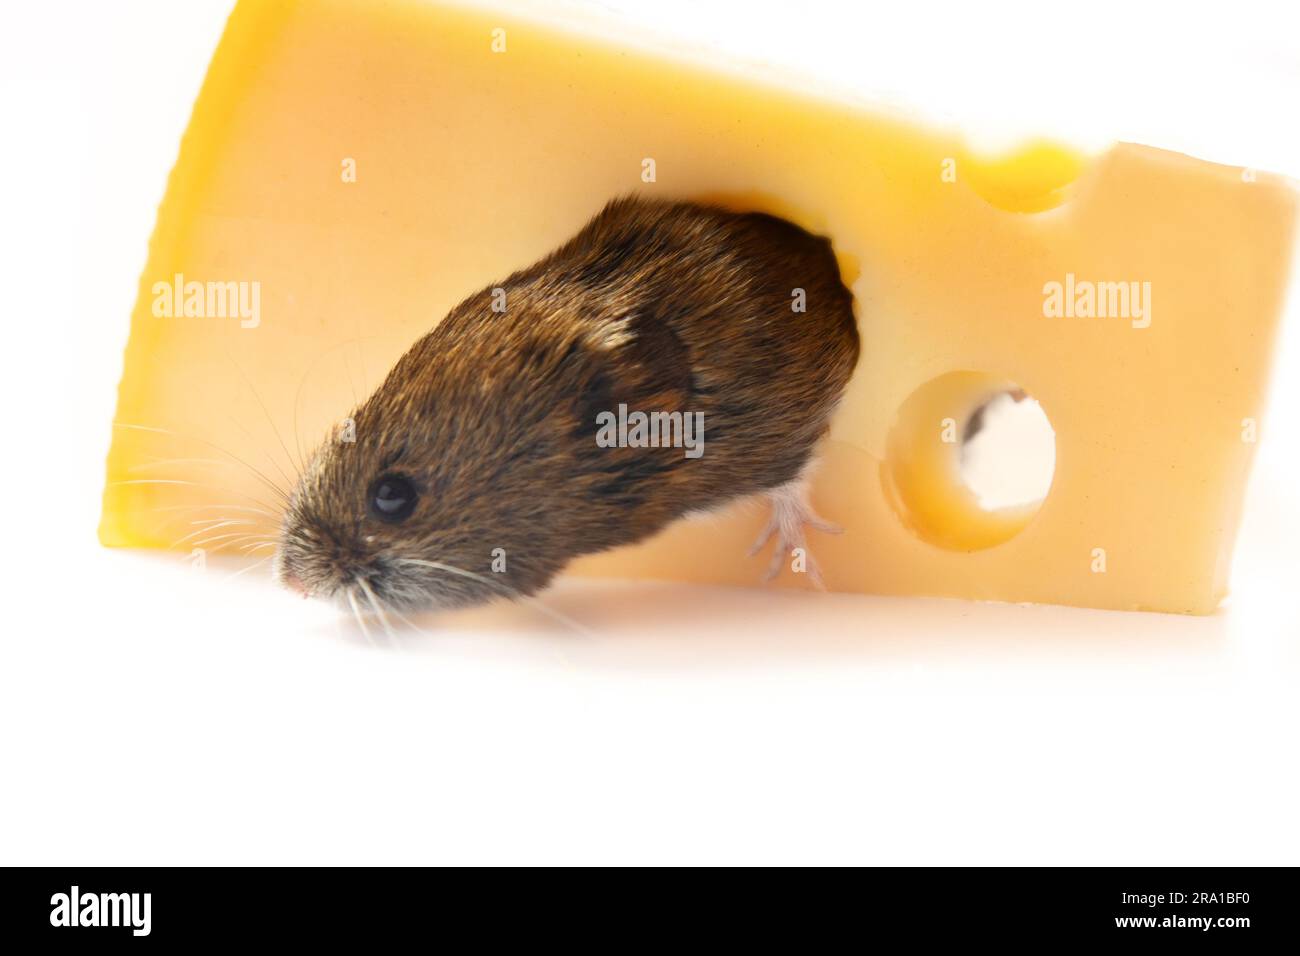 Mäuseartige Nagetiere als Schädlinge für den Menschen. Mäuse und Wühlmäuse gelangen in Lagerhäuser und Haushalte und zerstören Nahrungsmittel. Mit Wühlmehl genagtes Loch in Käse, isoliert Stockfoto